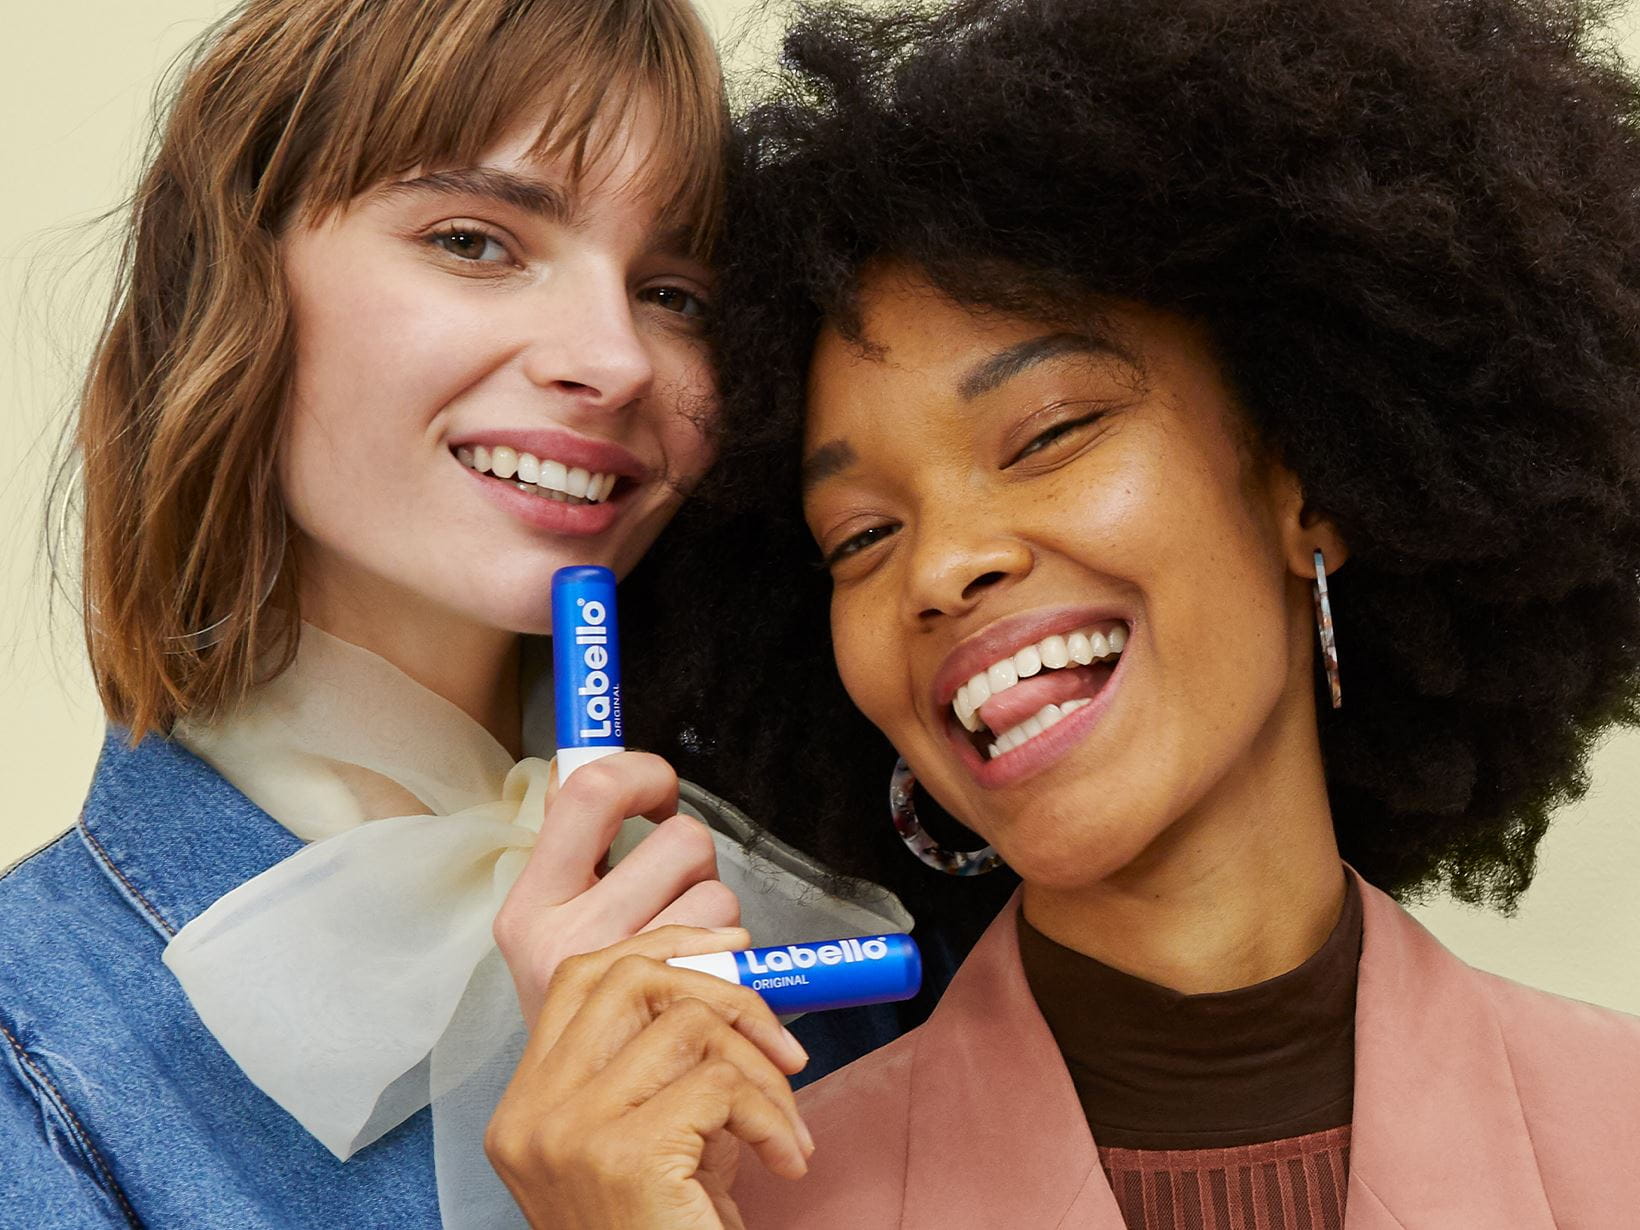 Zwei lächelnde Frauen mit dem Labello Original Lippenbalsam in ihren Händen.